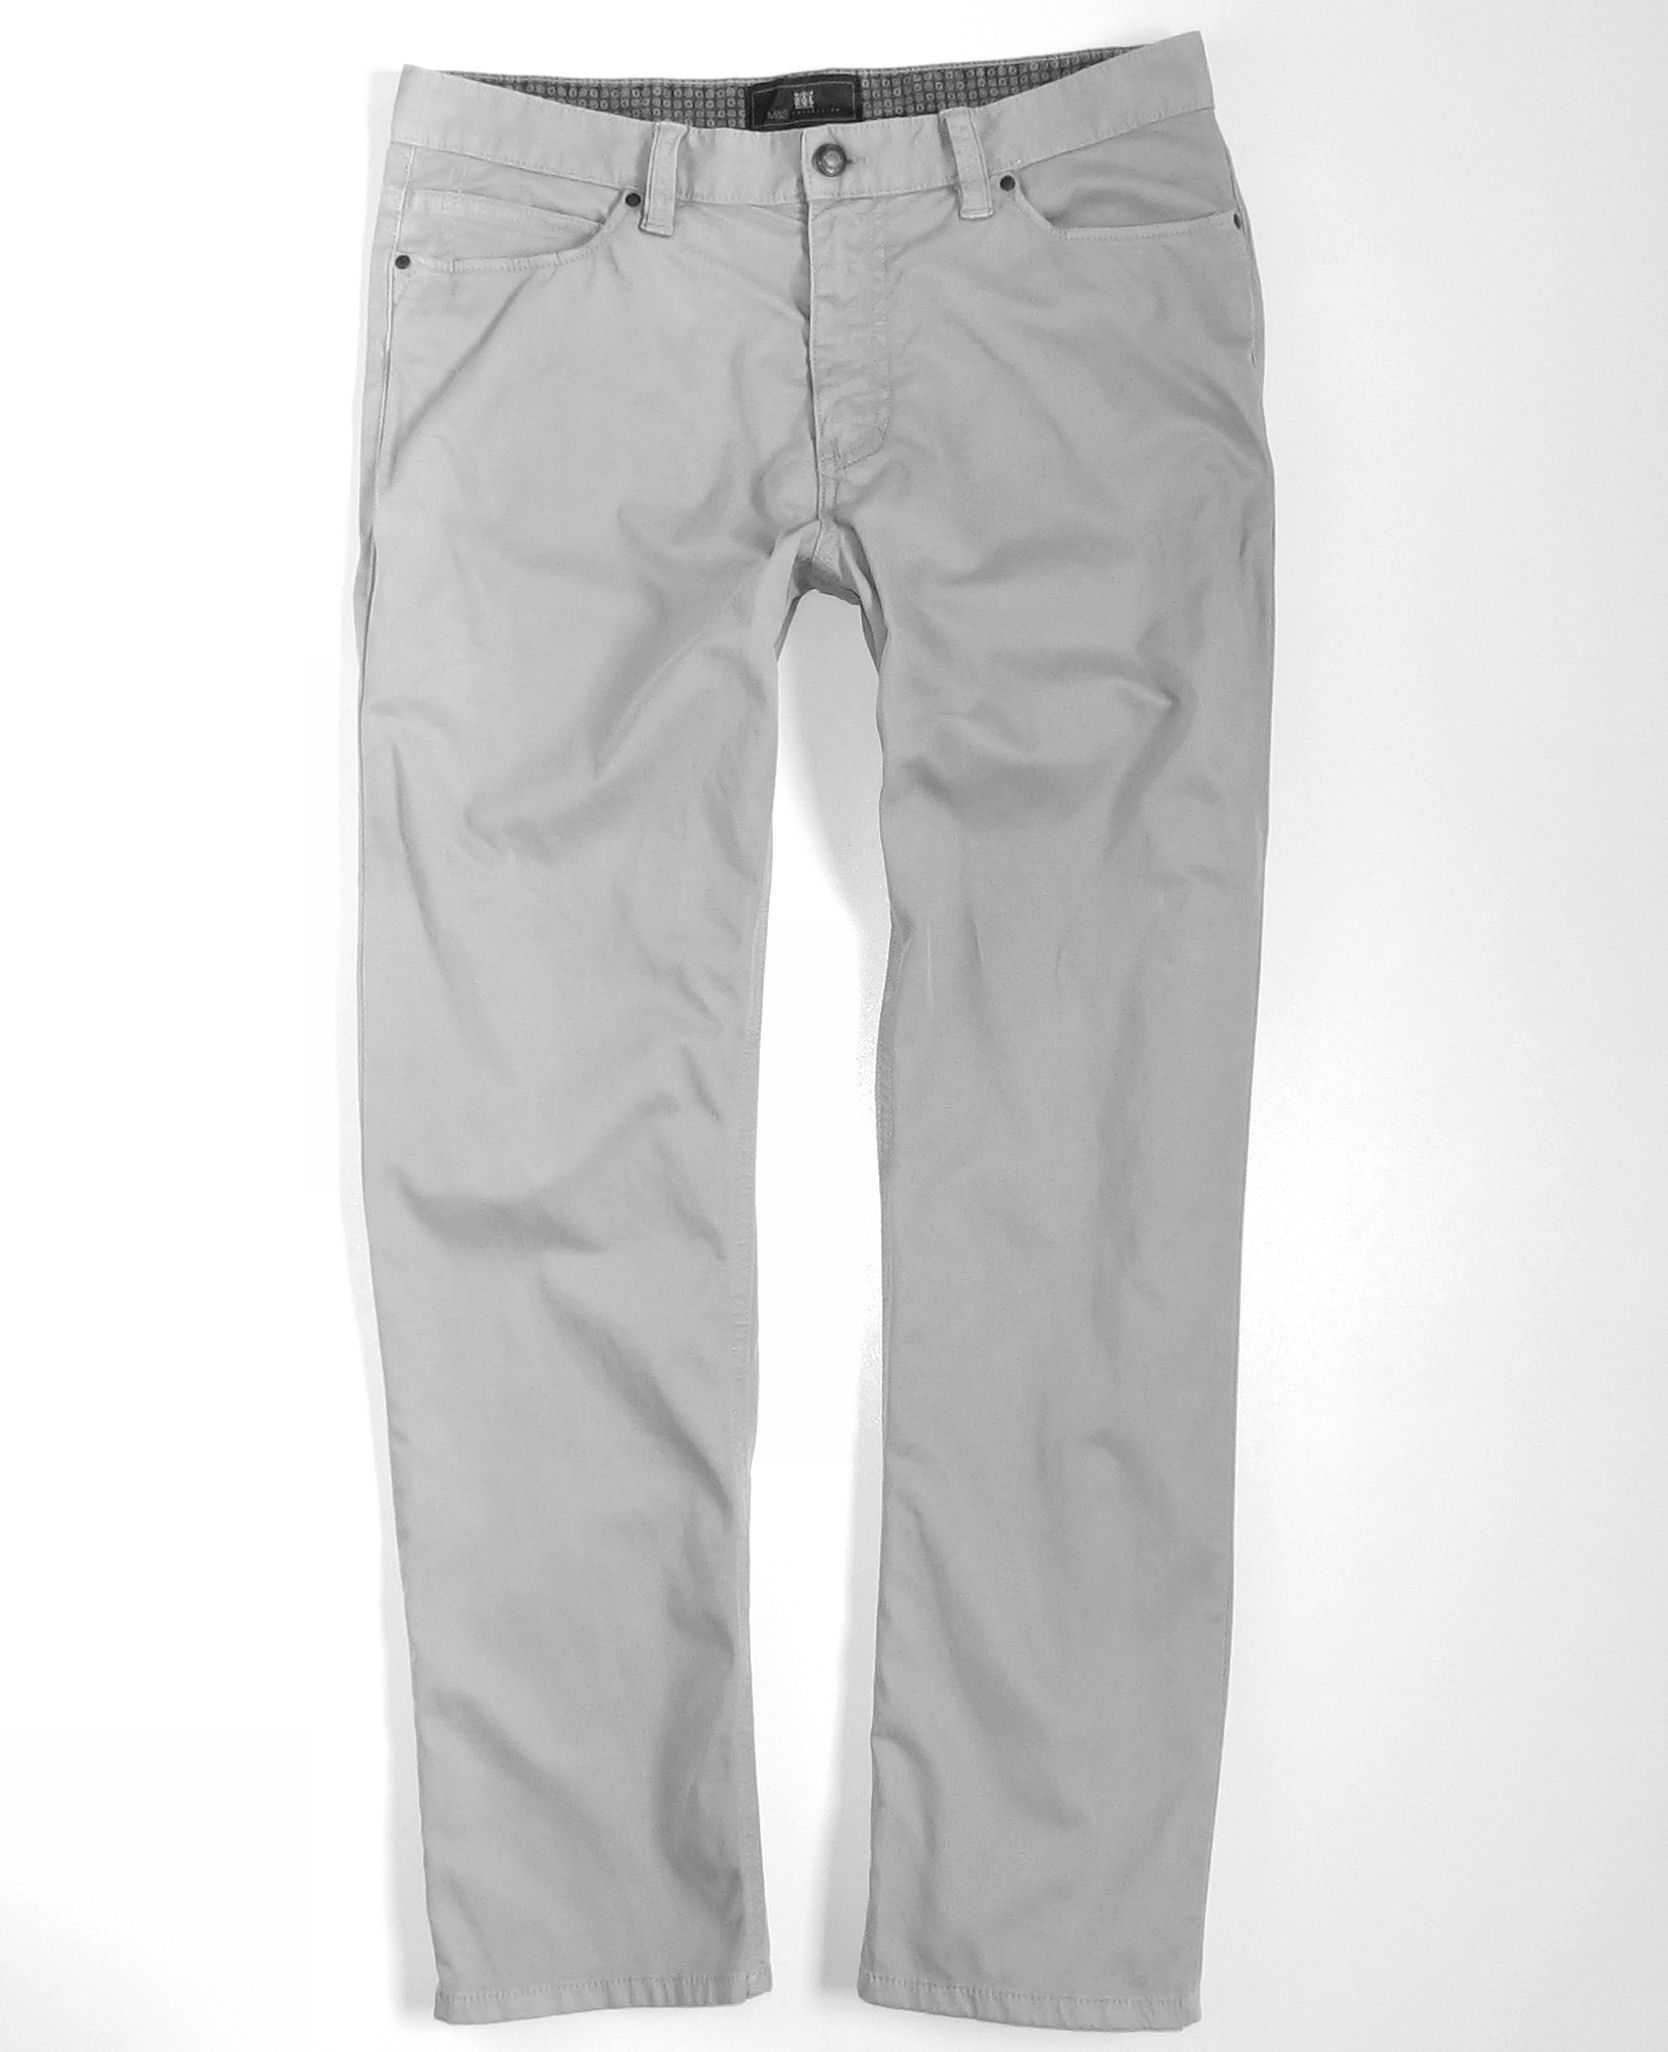 Spodnie męskie M&S Marks Spencer jeans L pas 88